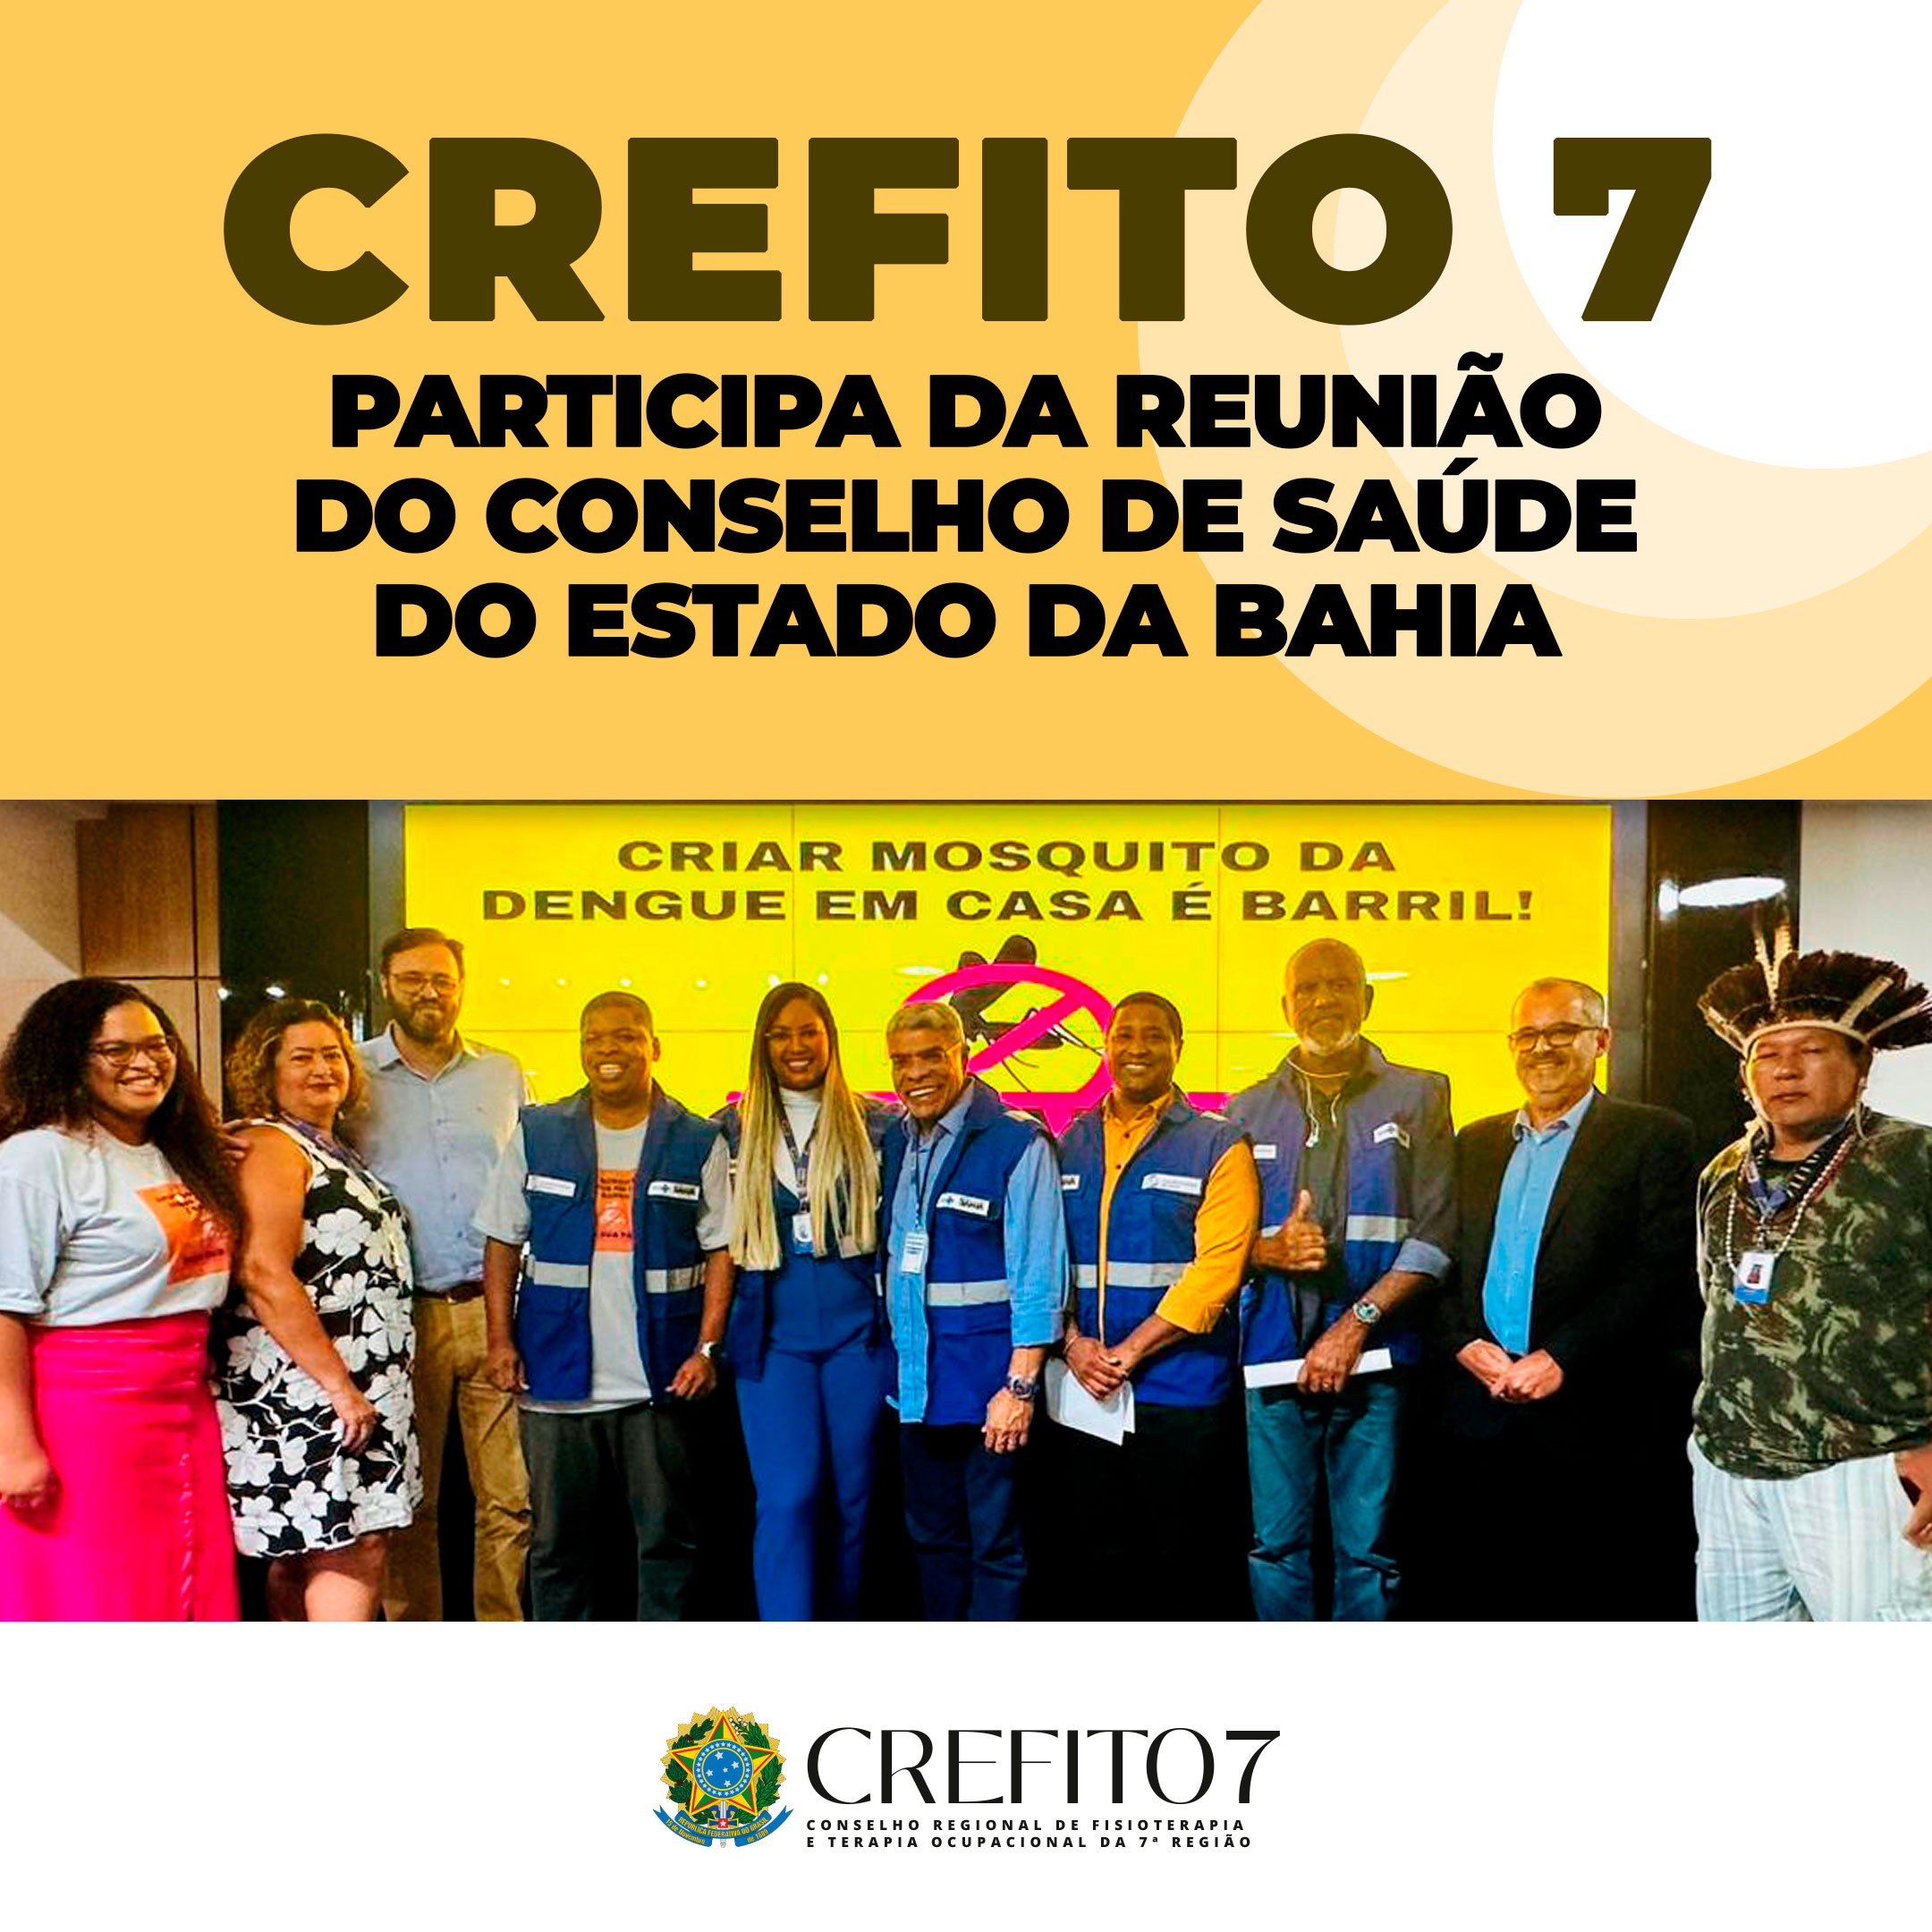 CREFITO-7 PARTICIPA DA REUNIÃO DO CONSELHO ESTADUAL DE SAÚDE DA BAHIA